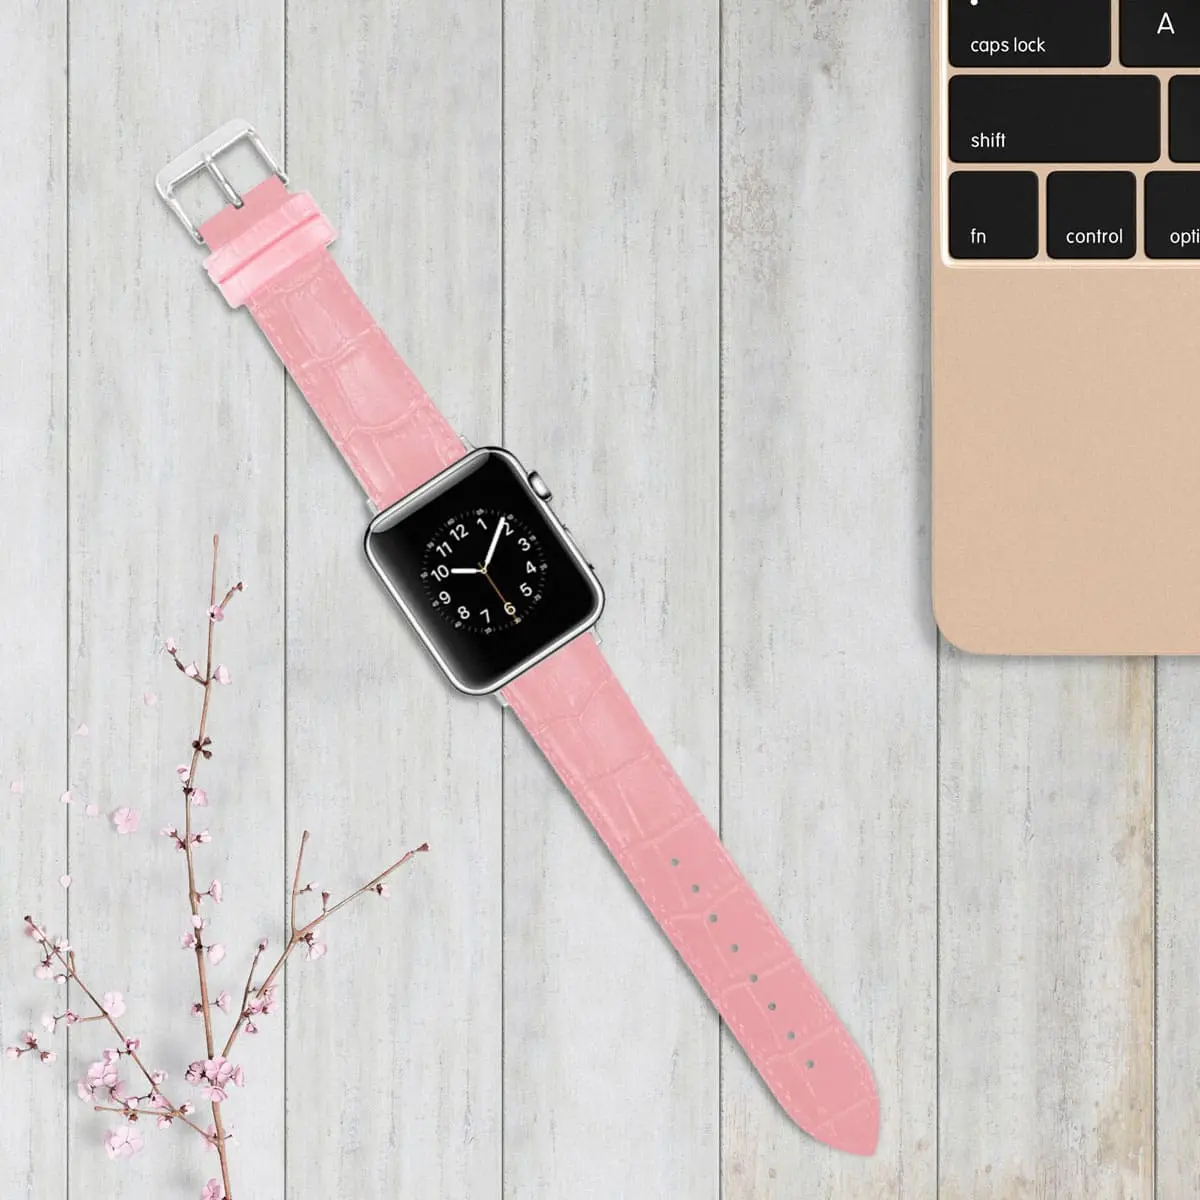 Tous les accessoires pour Apple Watch disponibles sur Gsm55